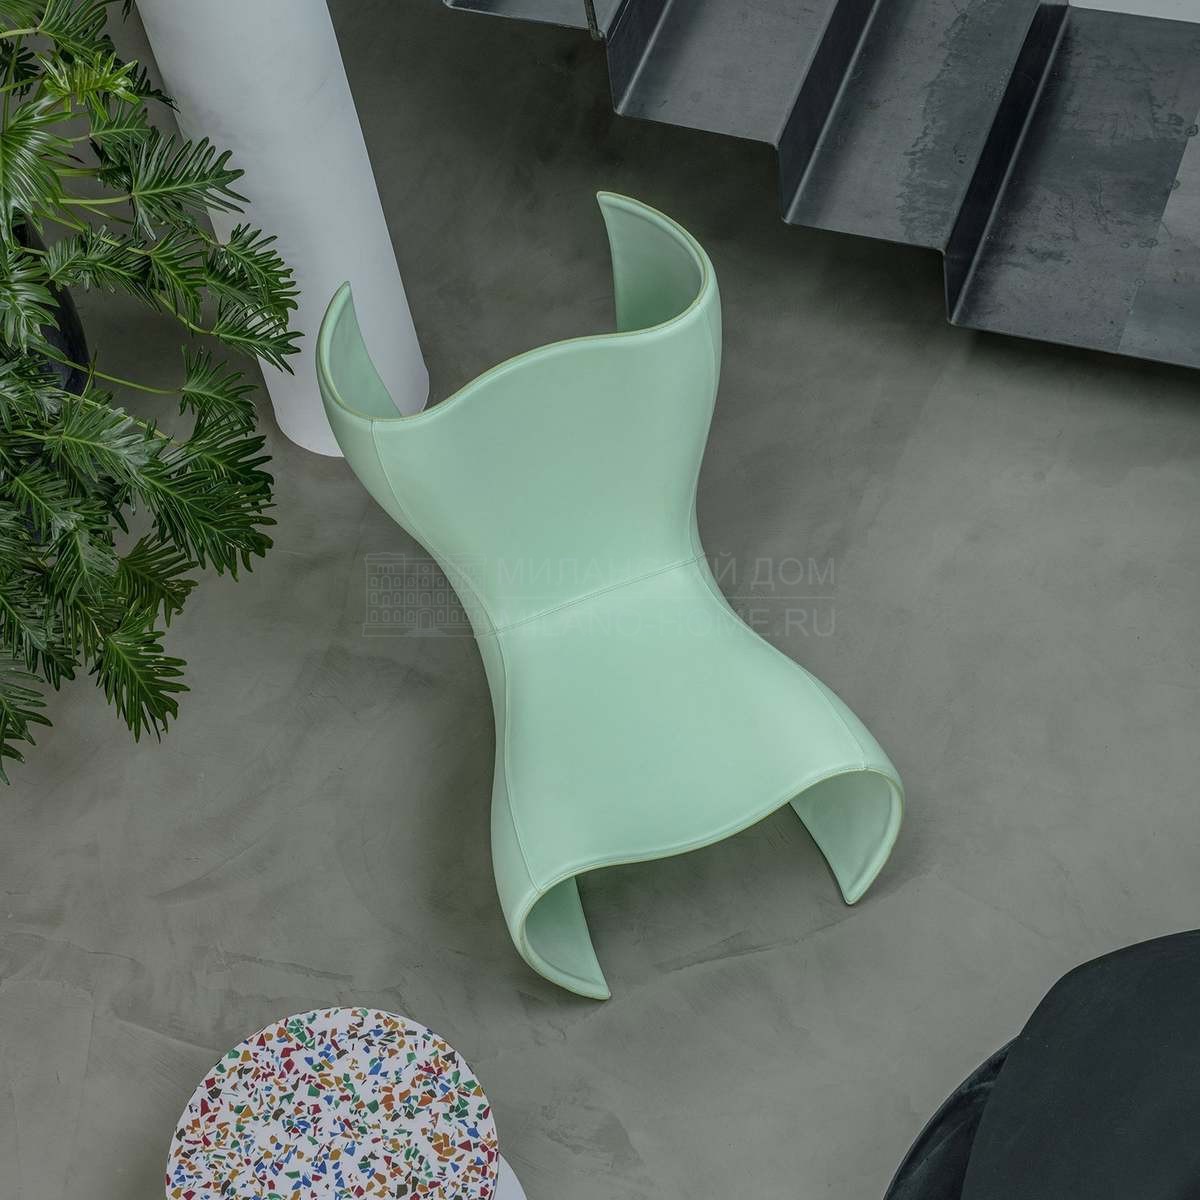 Кресло Felt chair из Италии фабрики CAPPELLINI